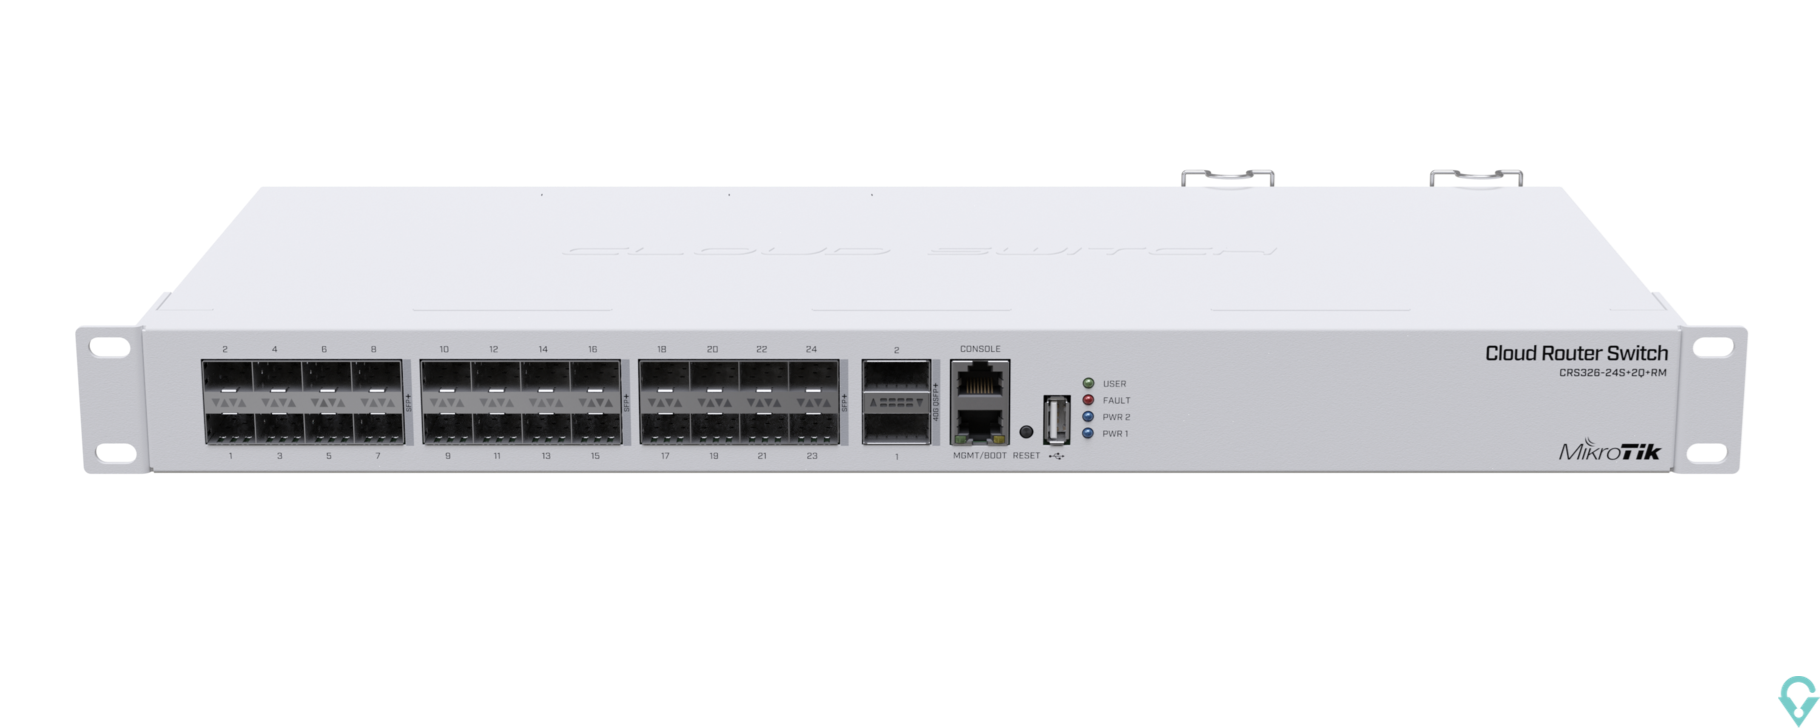 Εικόνα της CRS326-24S+2Q+RM Cloud Router Switch 326-24S+2Q+RM with 2 x 40G QSFP+ cages, 24 10G SFP+ cages, 1x LAN port for management, Rout